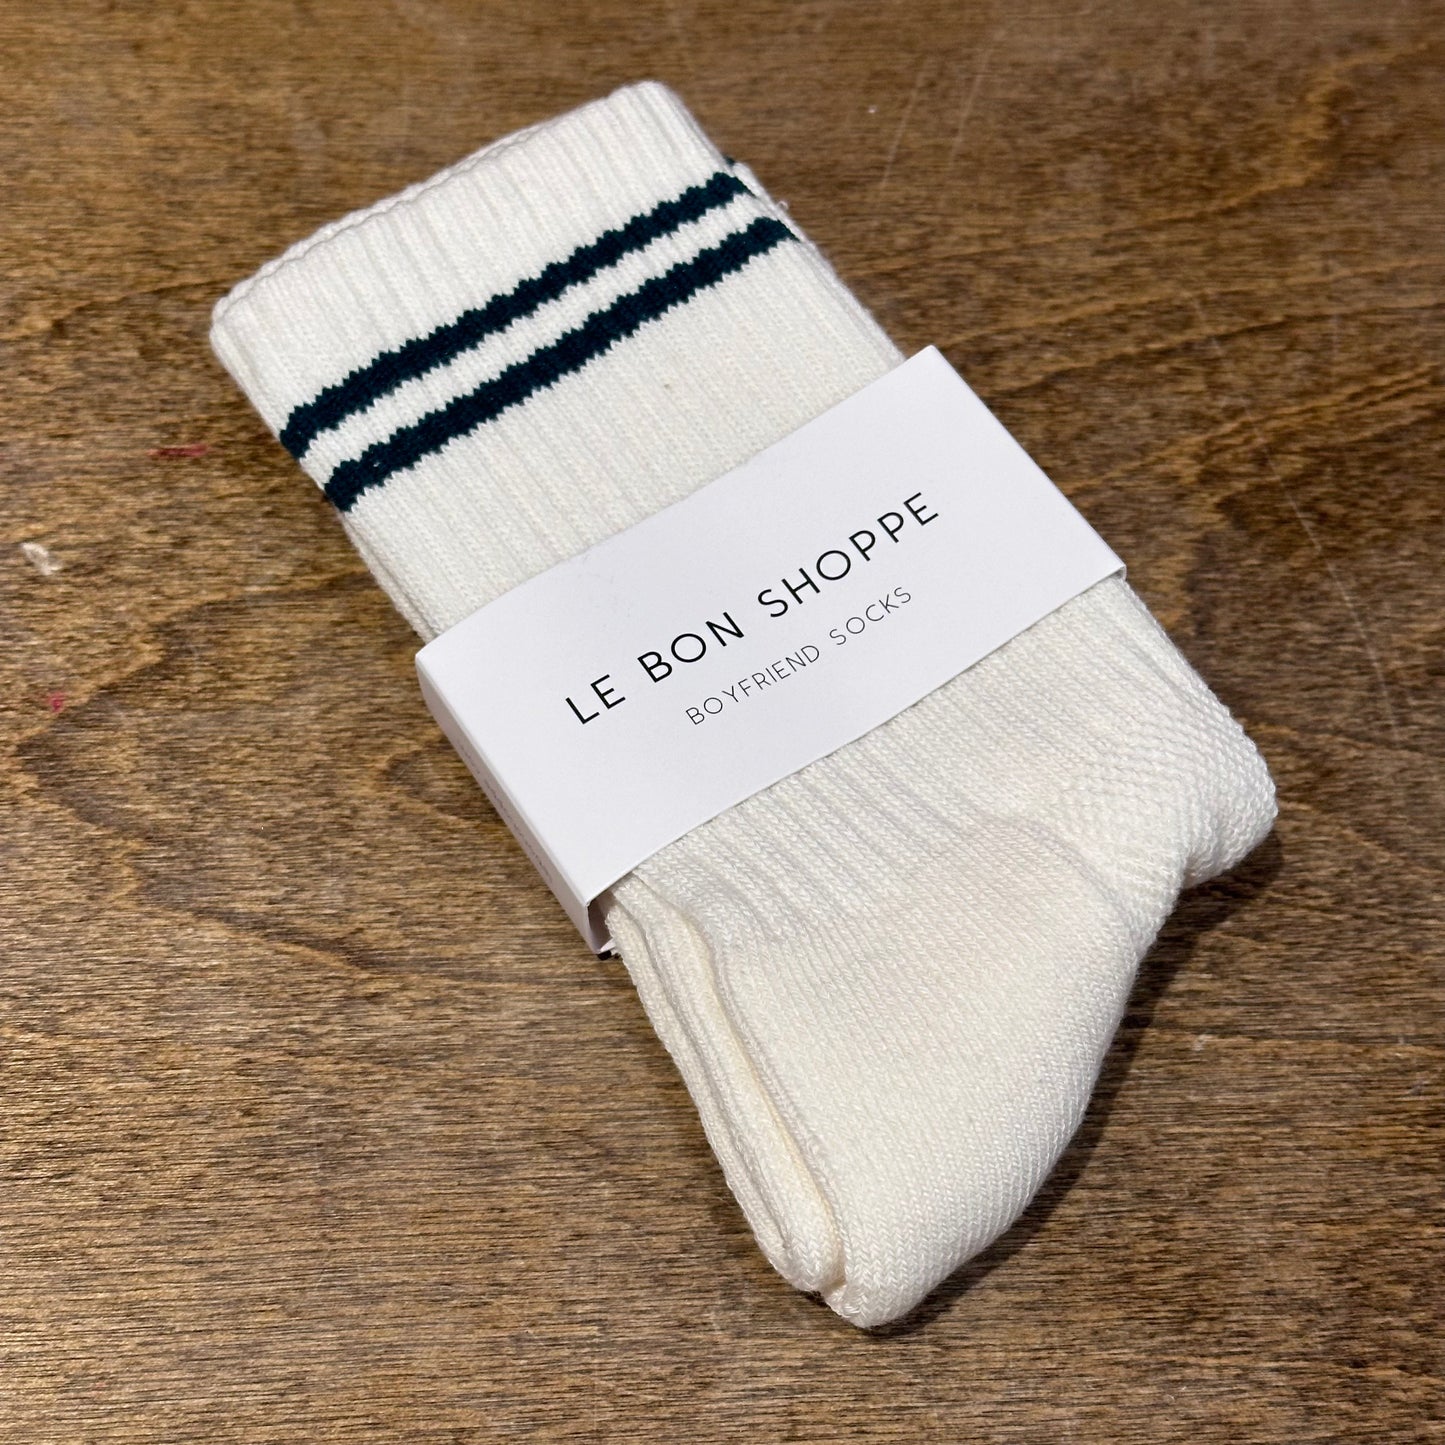 Le Bon Boyfriend Sock